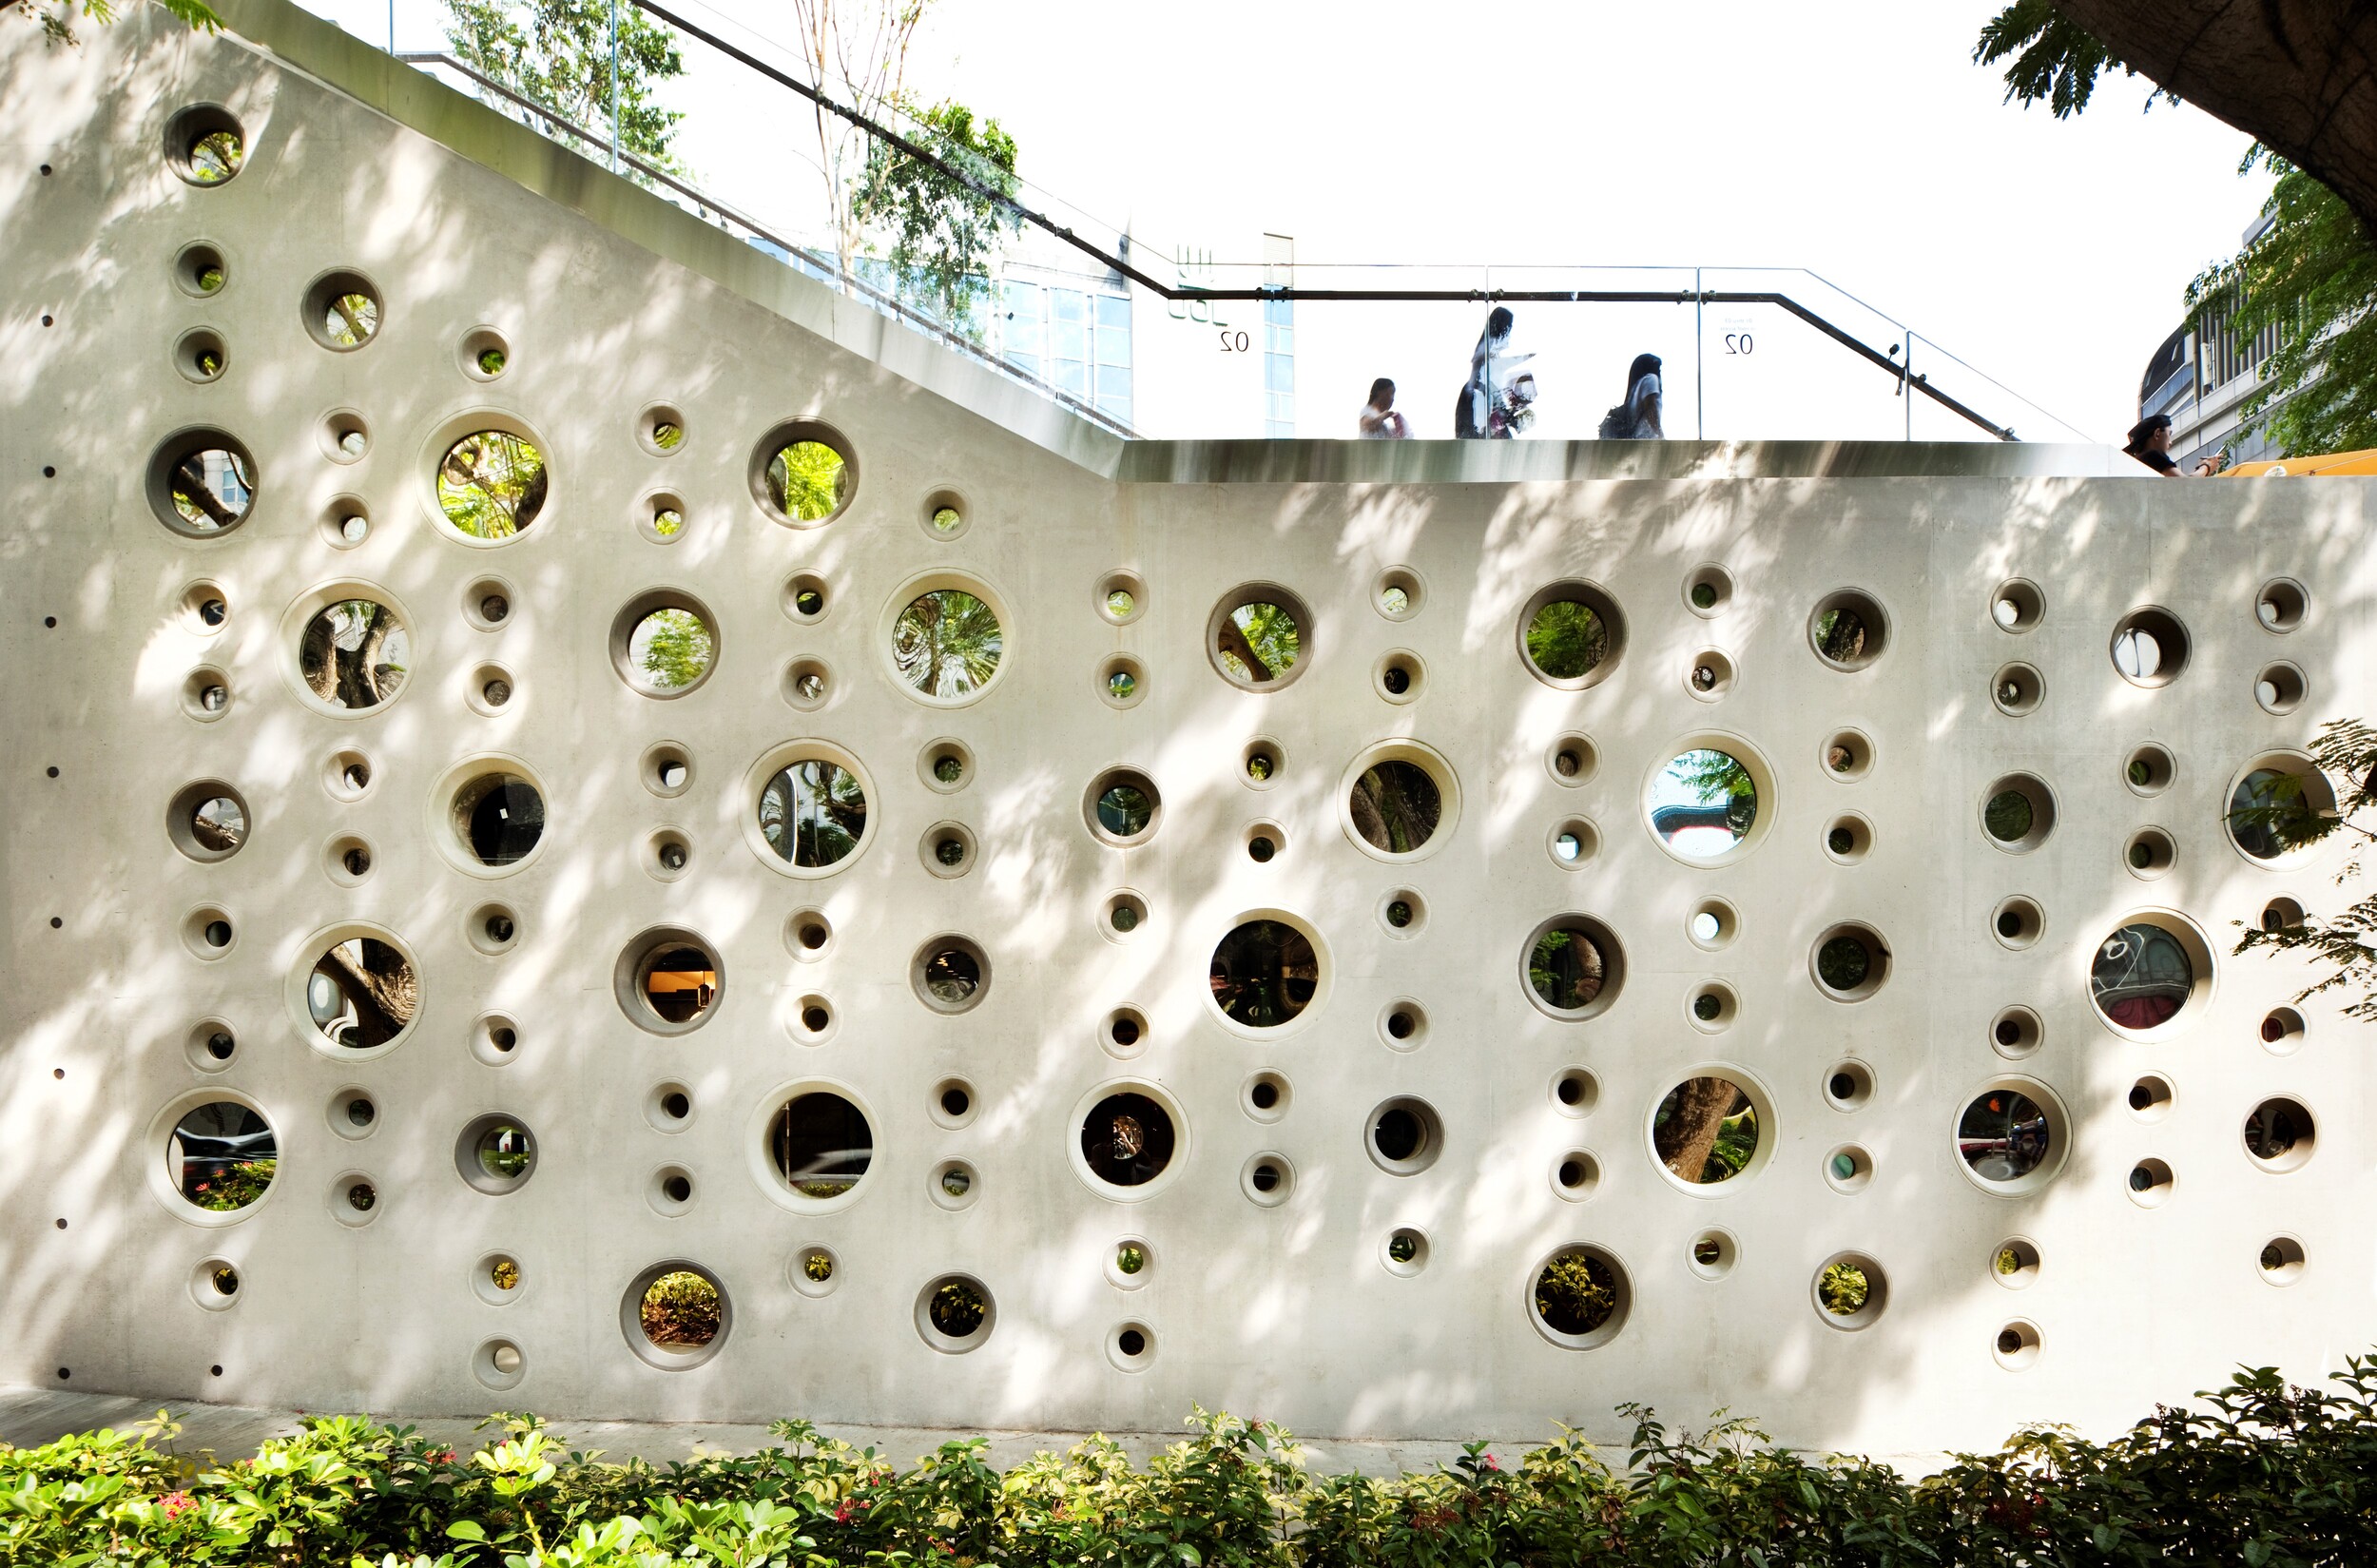 布滿圓形孔洞的混凝土牆， 建構出窺探創作的設計意趣。